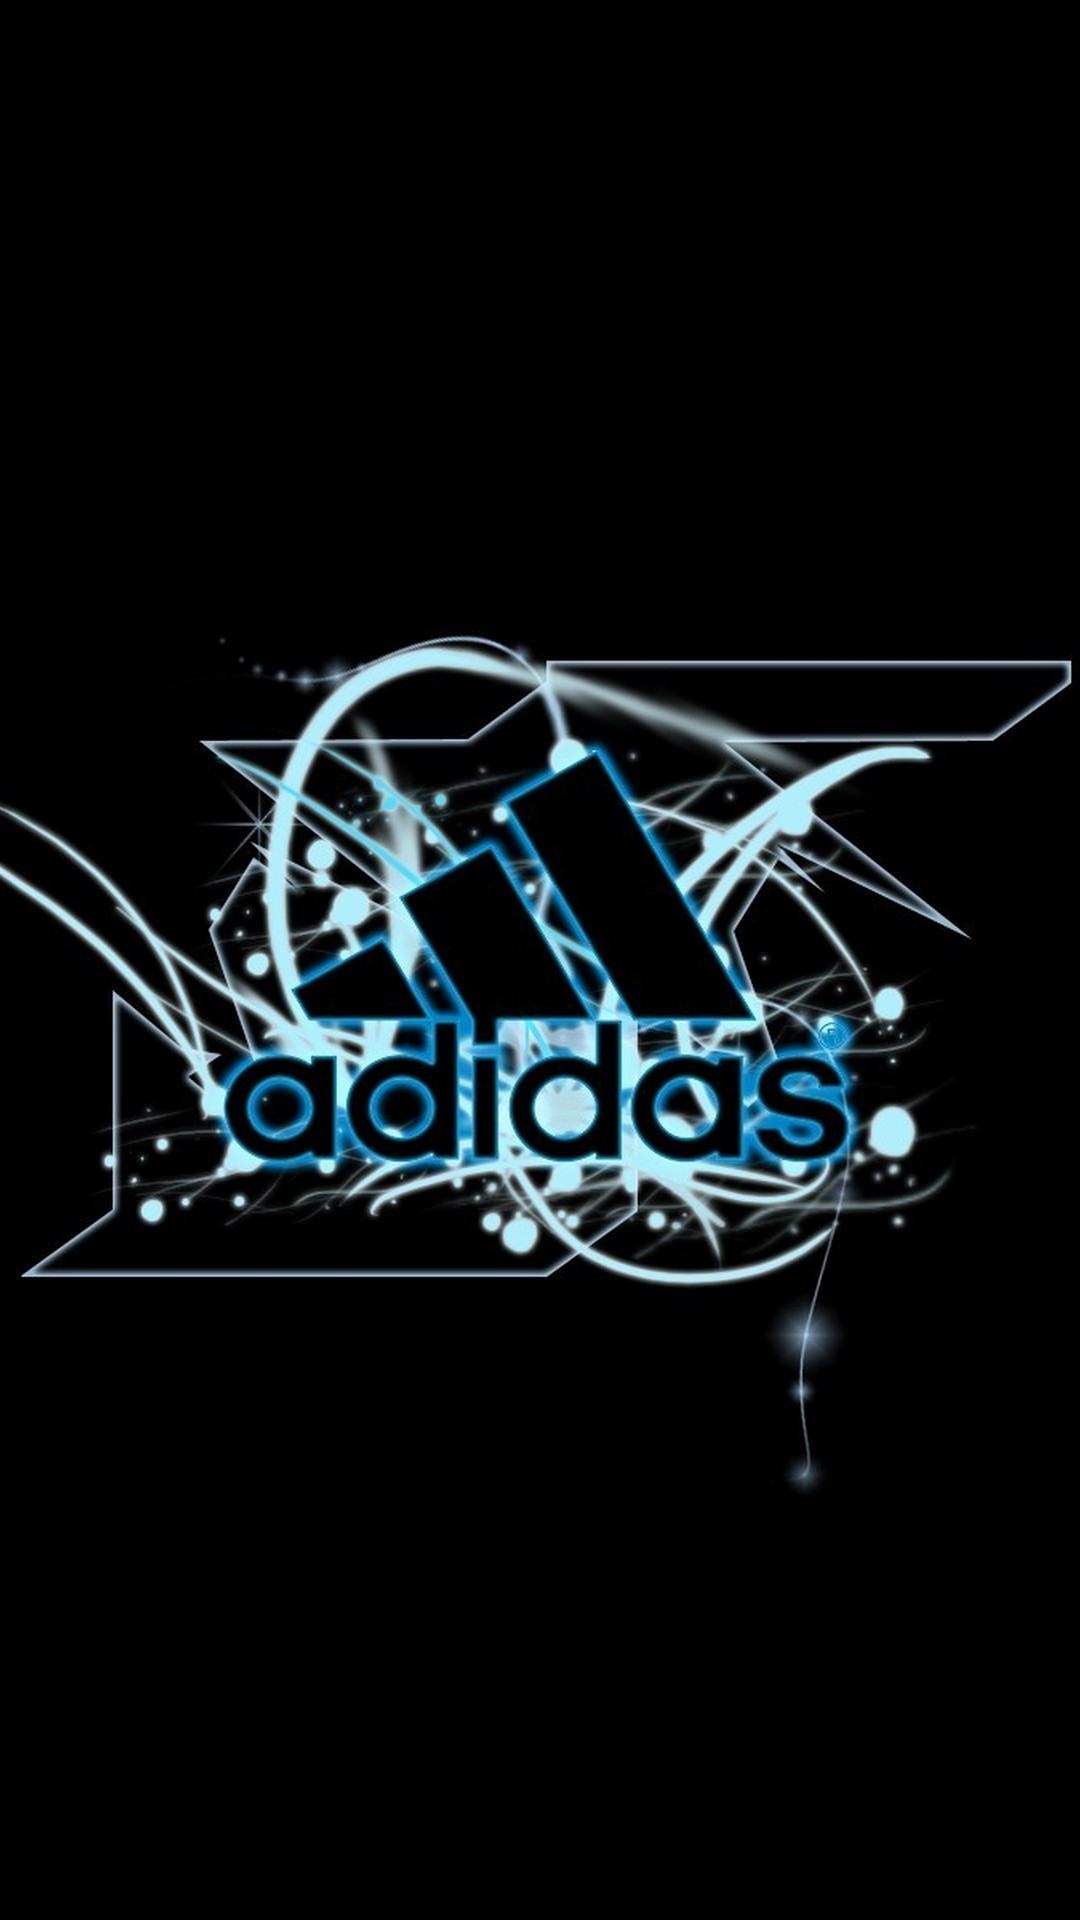 hình ảnh logo adidas